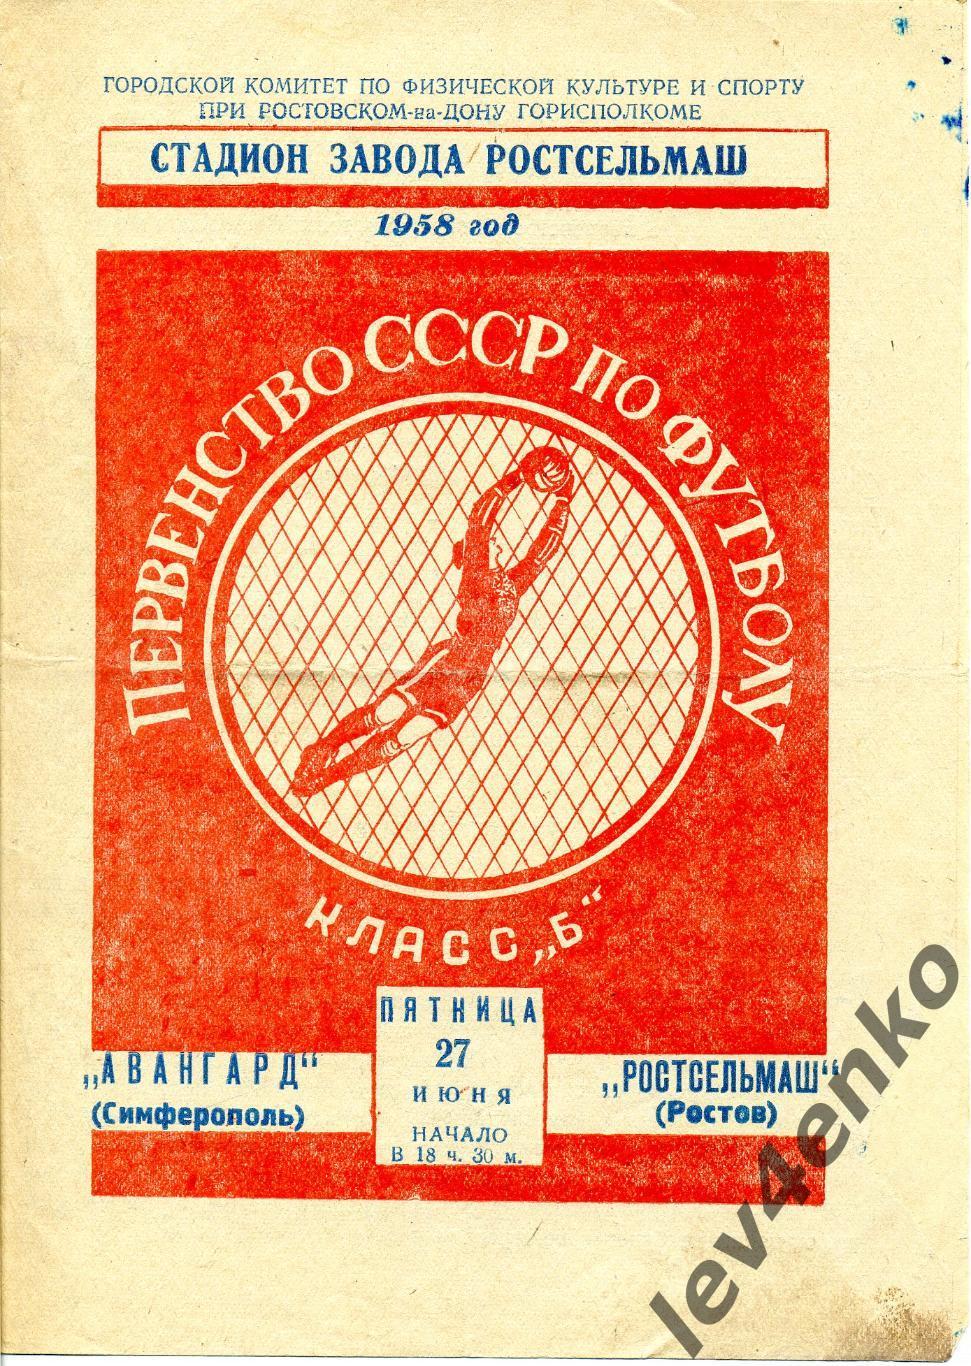 Ростсельмаш (Ростов) - Авангард (Симферополь) 27.06.1958